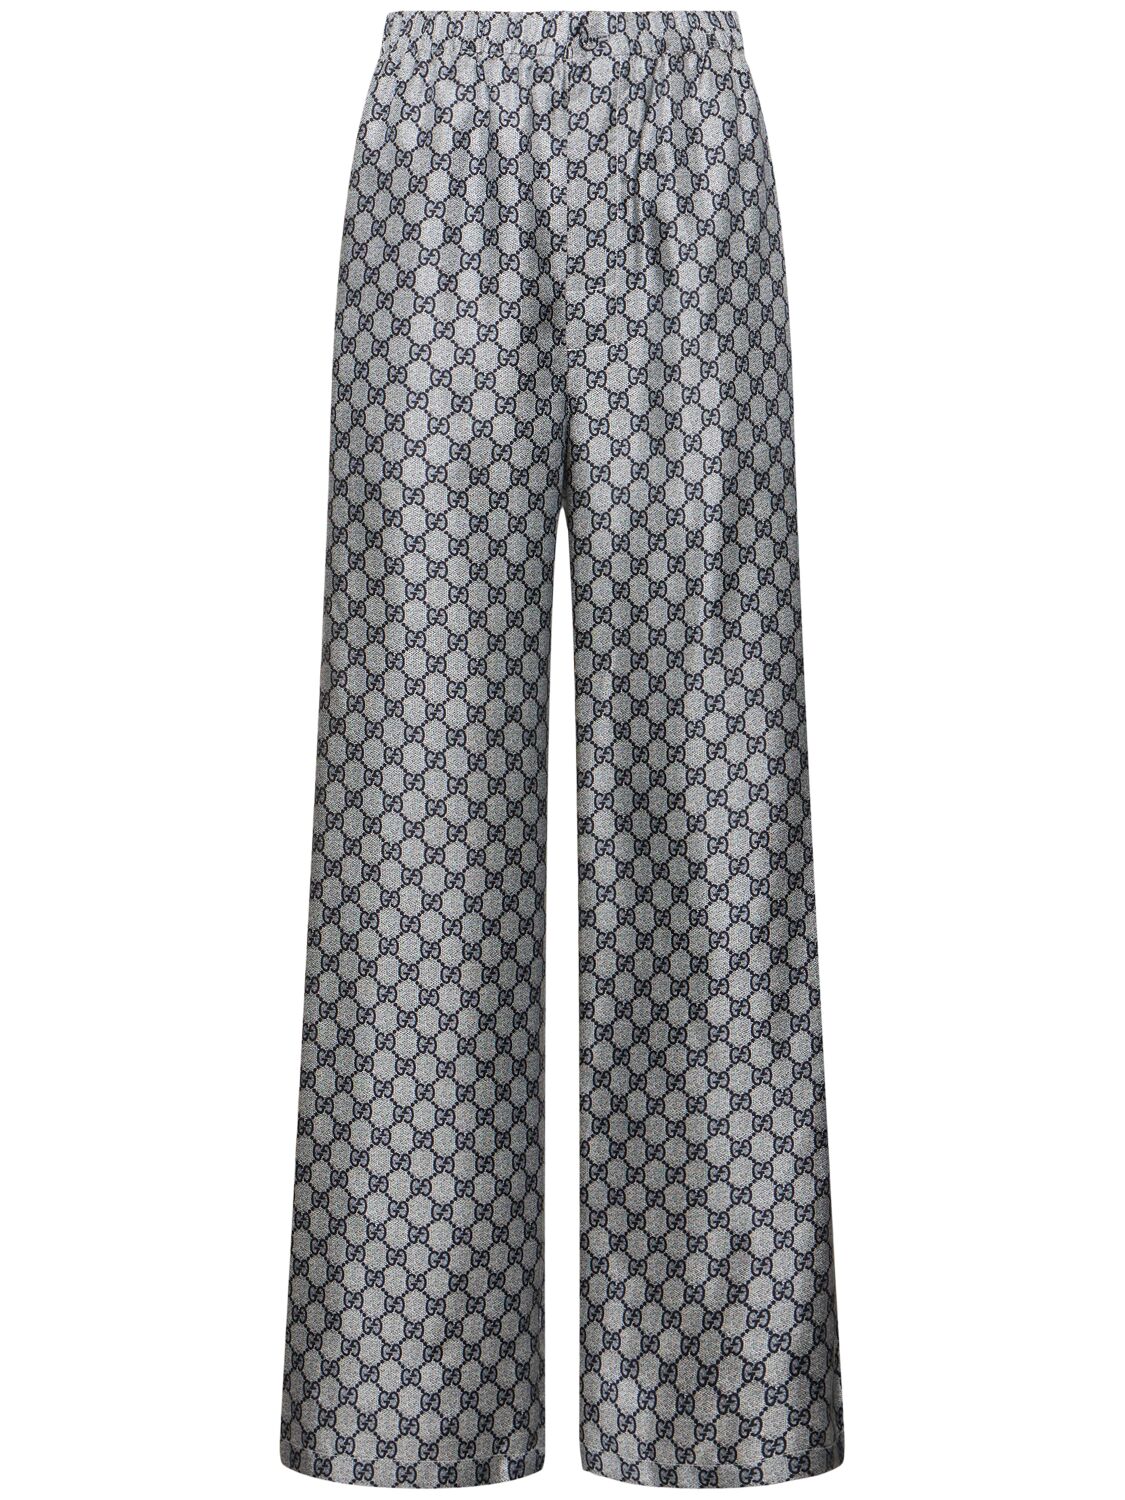 Gucci Gg Supreme Silk Pants In Blue/white